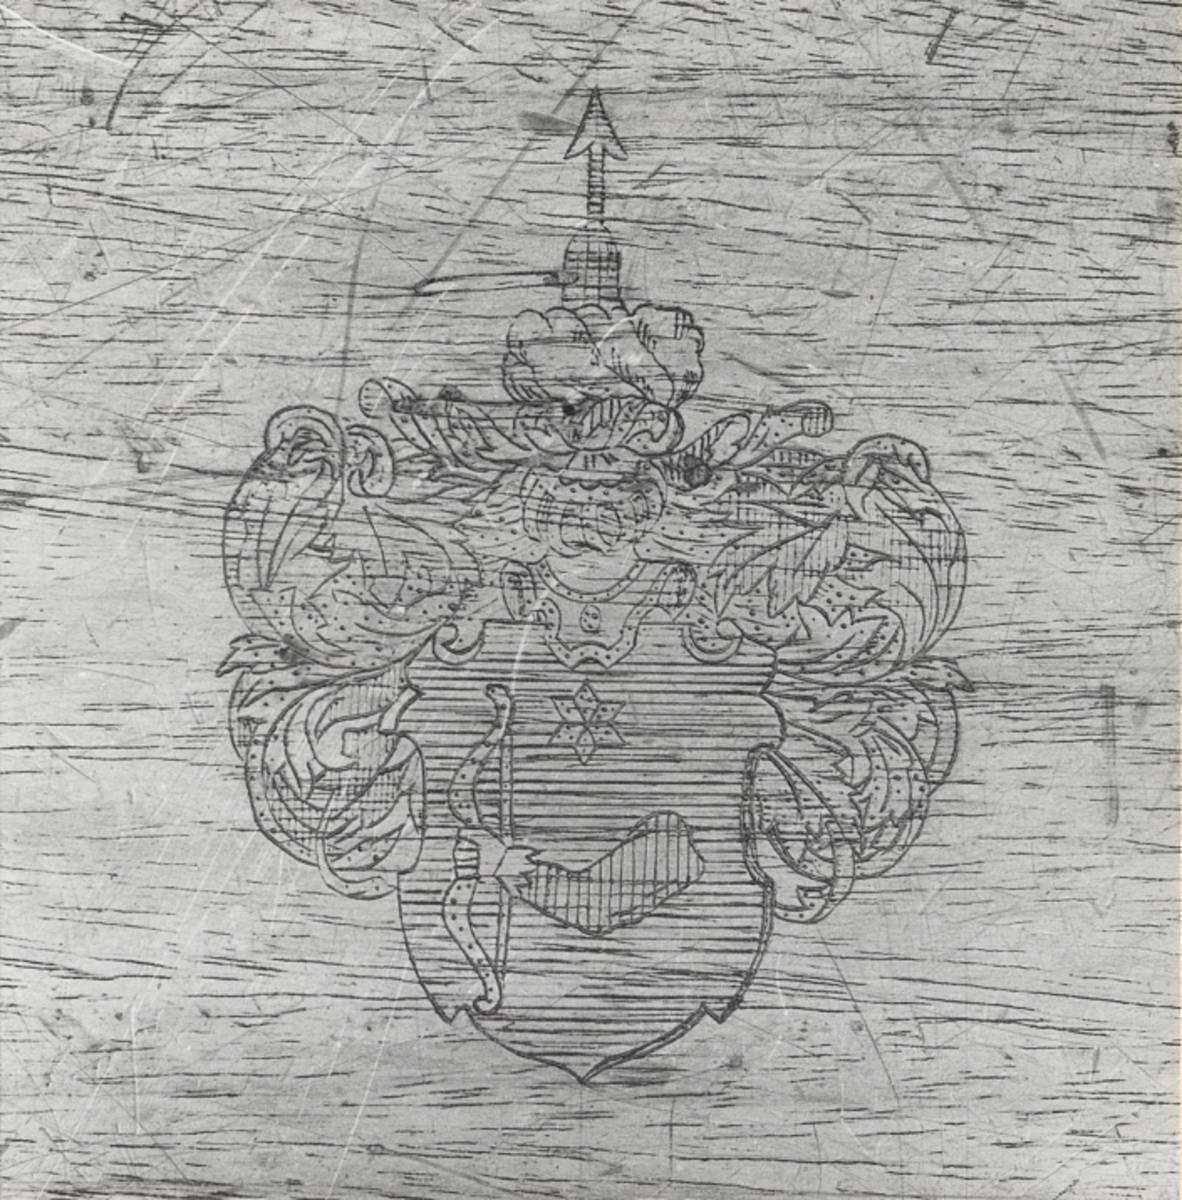 Text på insidan av locket: "Sjömanskista, tillhört översten vid Flottan, Mauritz Salomon von Krusenstierna, f. 1746 d. 1810, begagnad vid resor som chef å Ostindiska companiets fartyg åren 1771-1781 och som chef å linieskeppet ÖMHETEN i slaget vid Hogland 1788 July 17 de."
Ditsatta fötter av rundsvarvad furu, hamrade kopparbeslag i de fyra hörnen. Beslag även på locket samt vridna kopparhandtag på sidorna. Troligen sekundärt ditsatta, liksom texten på insidan av locket.
Mått:
Kistan: 1030 x 520 x 640 mm
Locket: 1090 x 550 x 70 mm